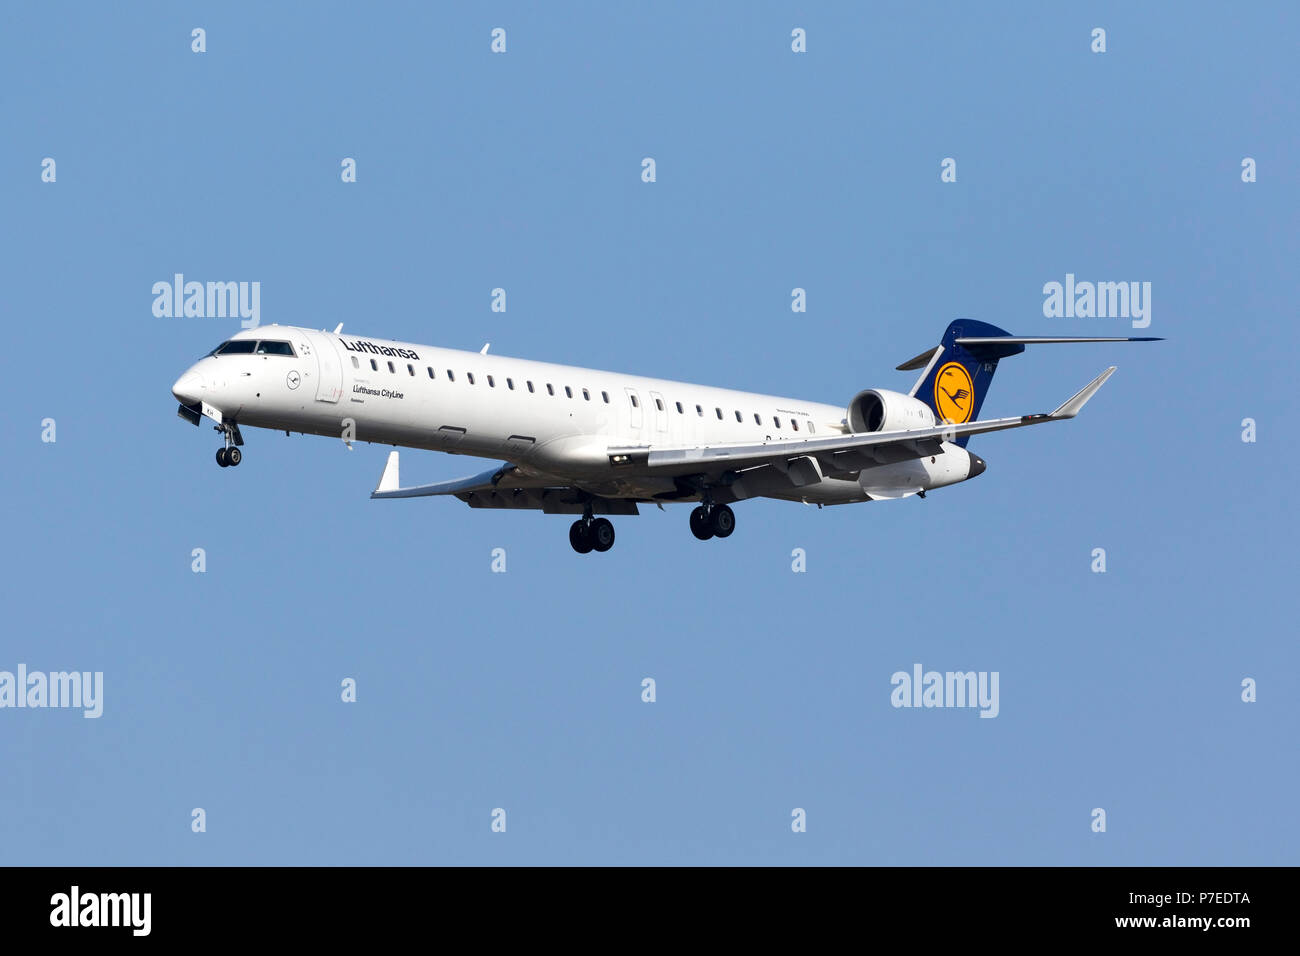 Lufthansa regional -Fotos und -Bildmaterial in hoher Auflösung - Seite 3 -  Alamy